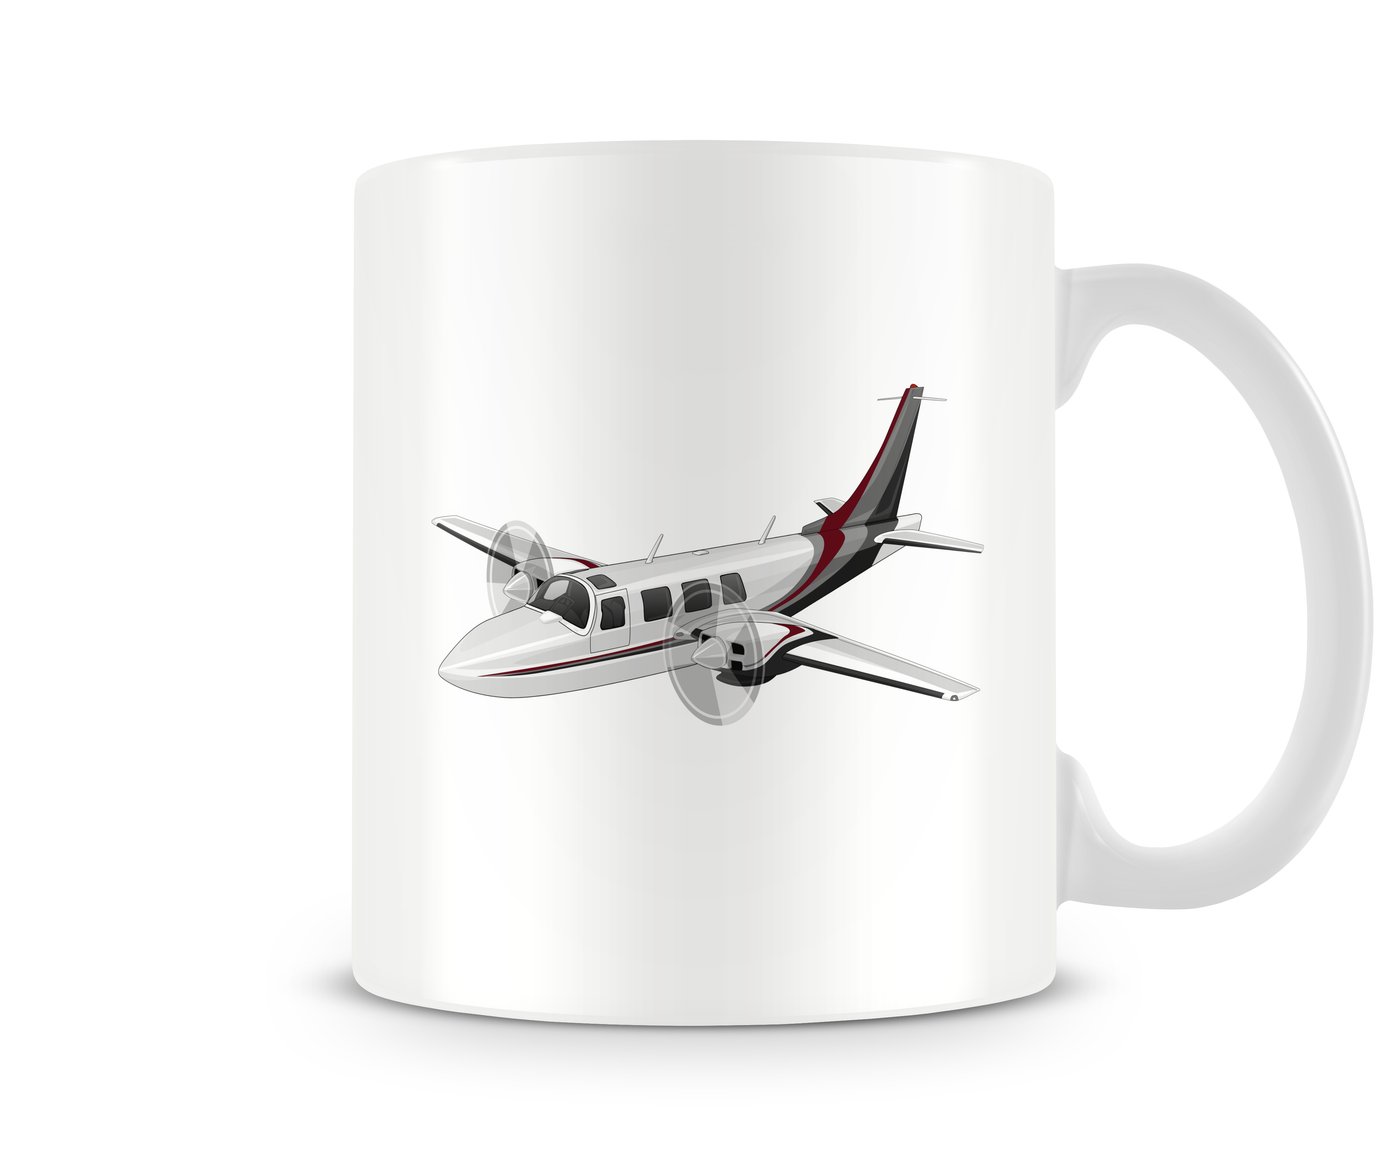 Piper Aerostar 700 Mug - Aircraft Mugs